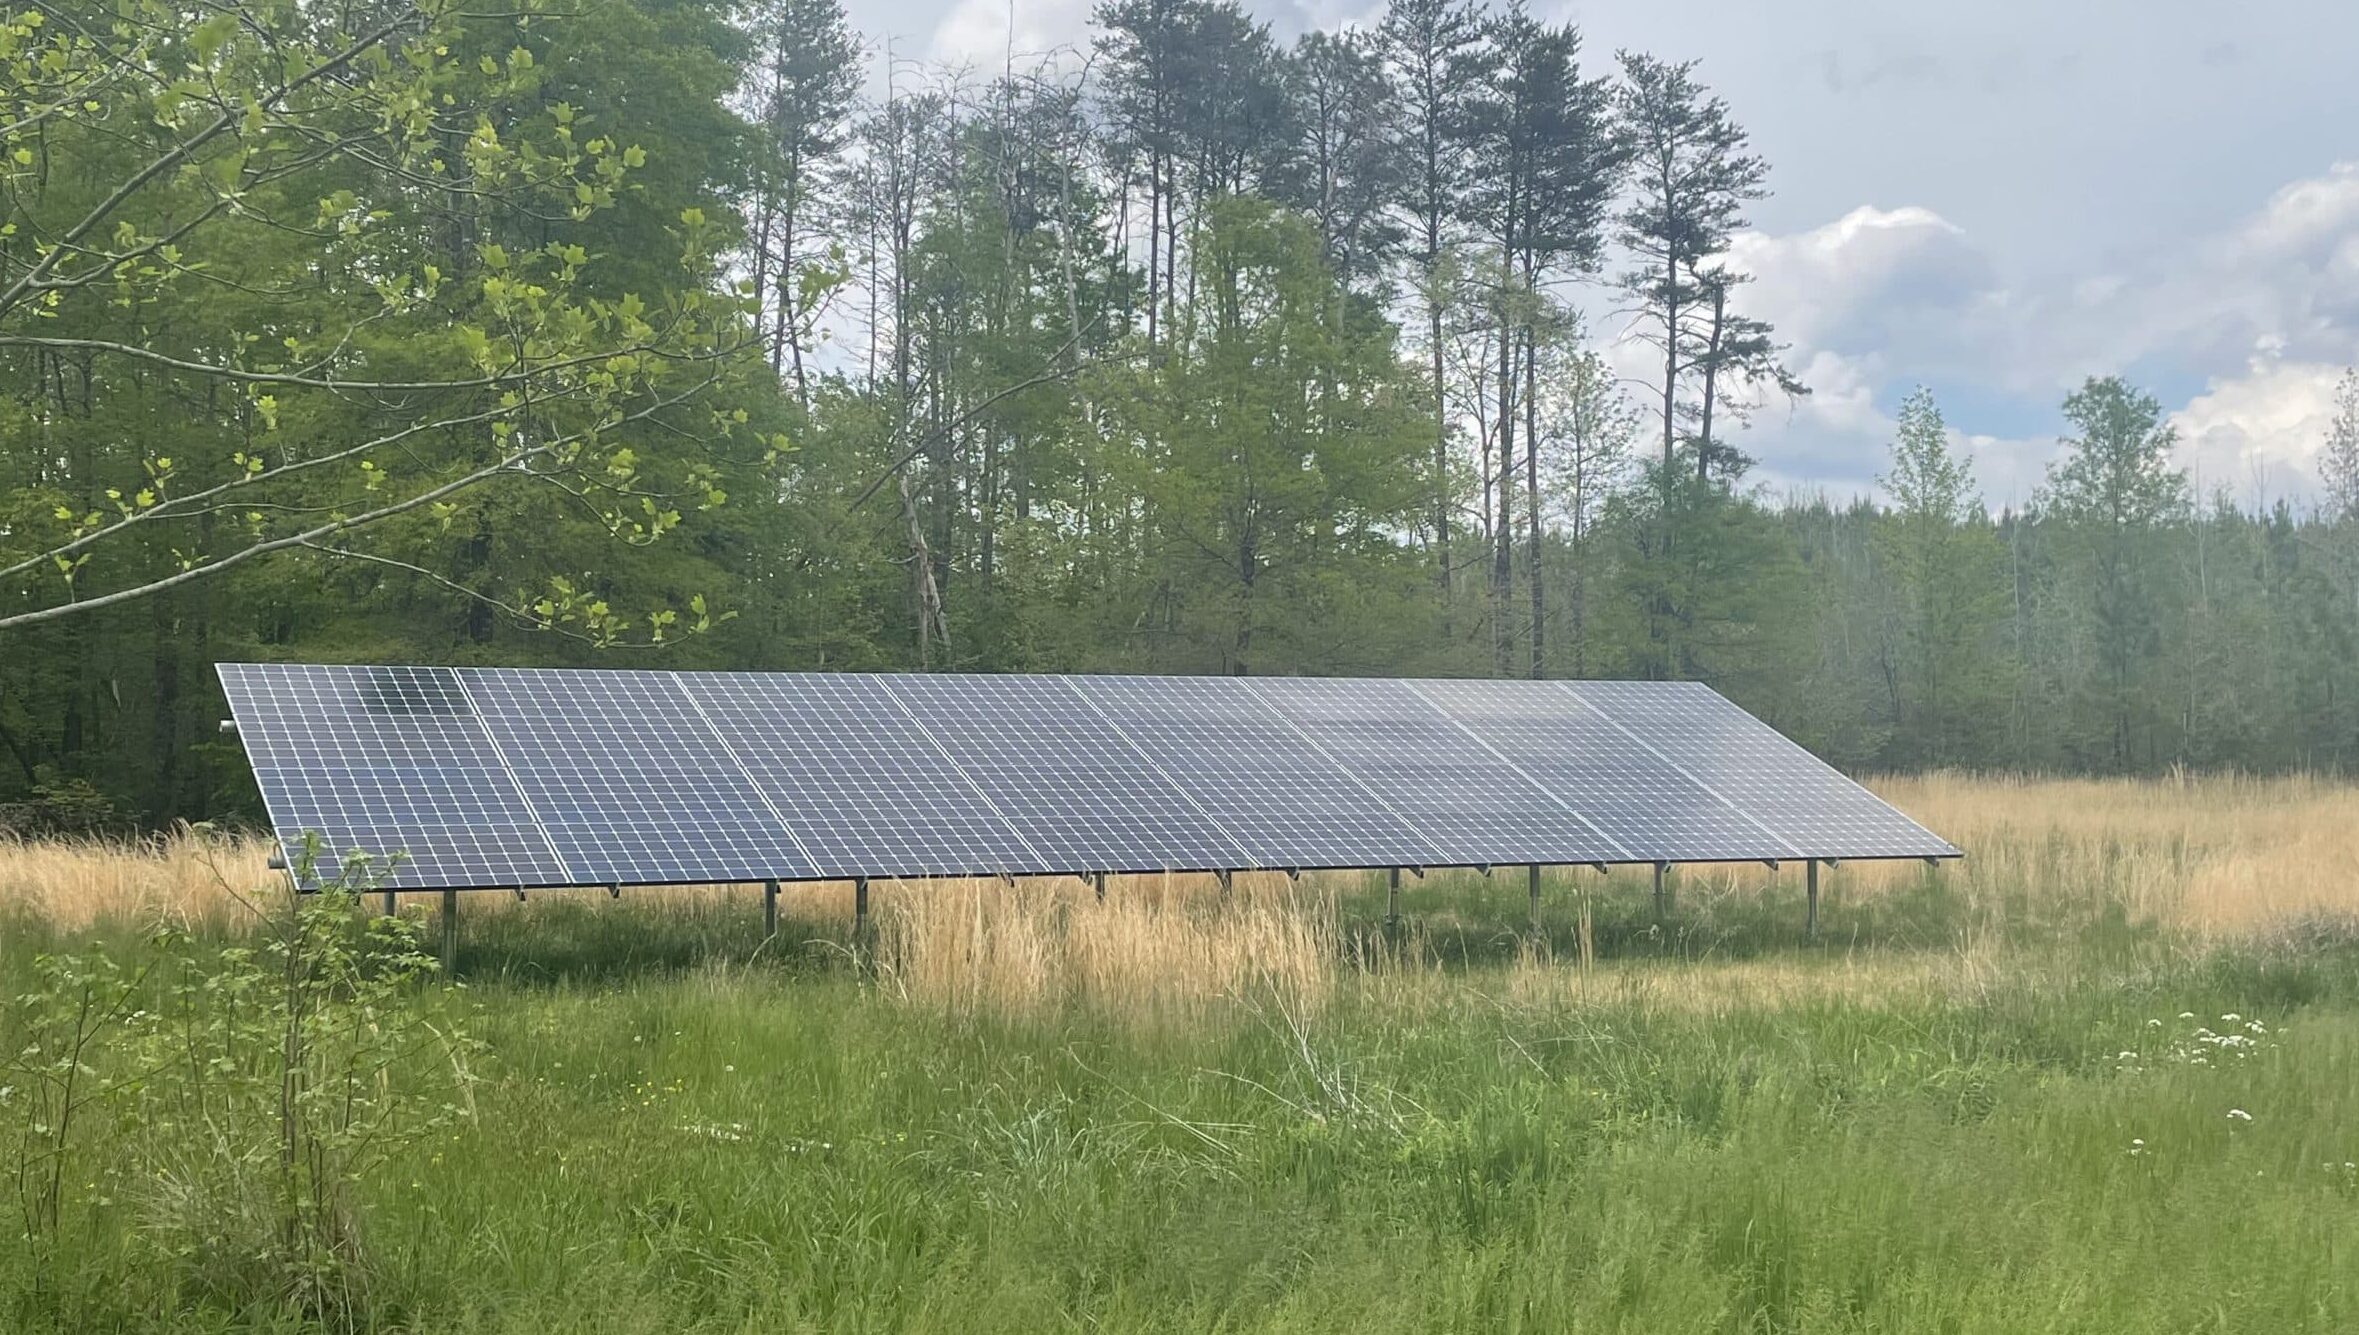 Kilo Hollow Energy ground solar array in a field